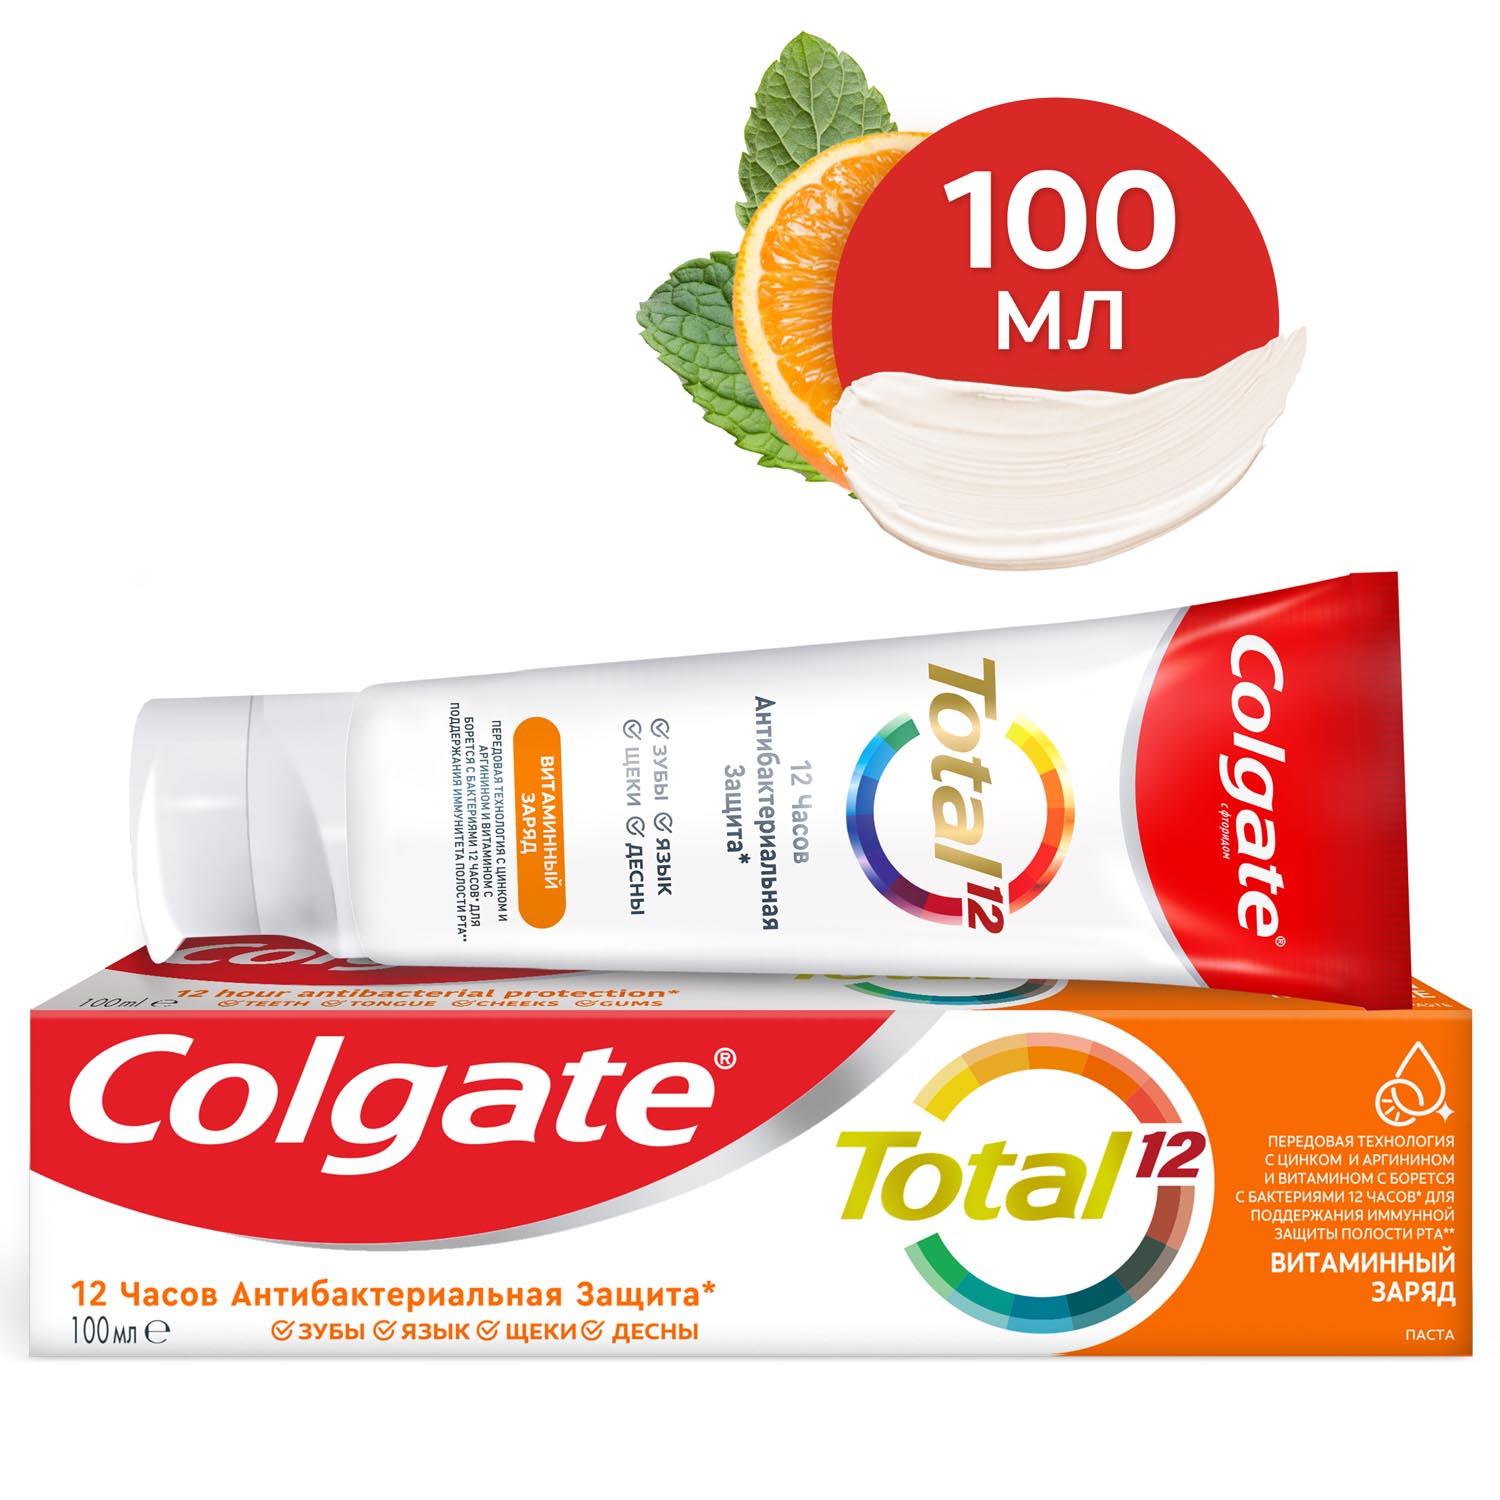 Зубная паста Colgate Total 12 Витаминный заряд с цинком и аргинином для комплексной антибактериальной защиты всей полости рта в течение 12 часов, 100 мл зубная паста splat лавандасепт для мощной защиты от бактерий и профилактики заболевания десен 100 мл